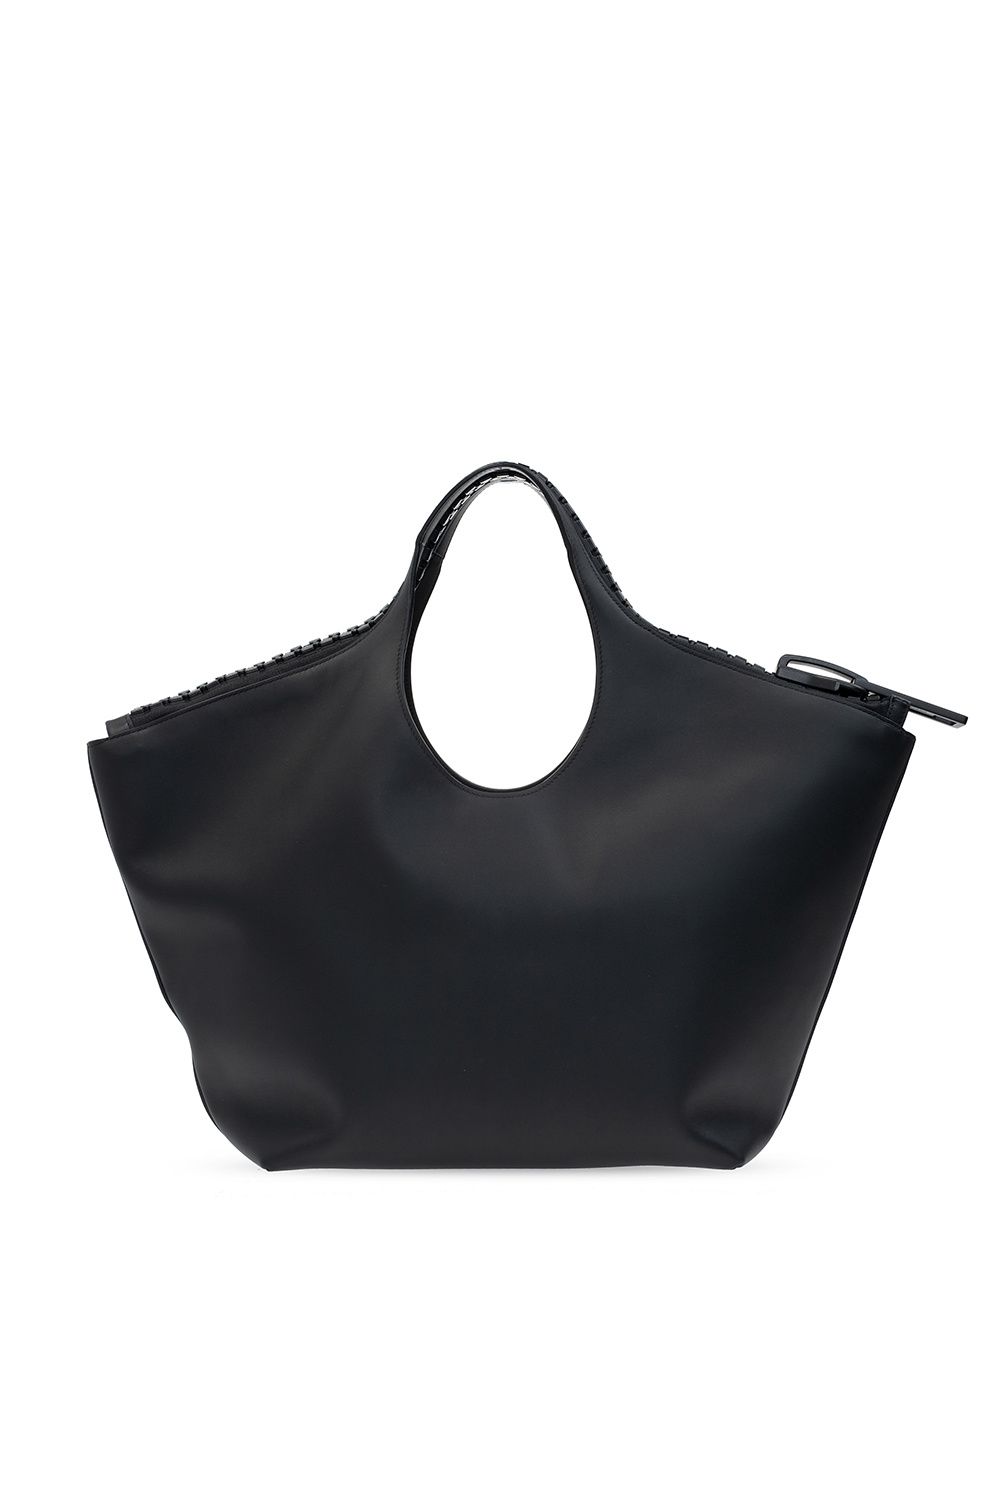 Balenciaga ‘Megazip’ hand bag with logo